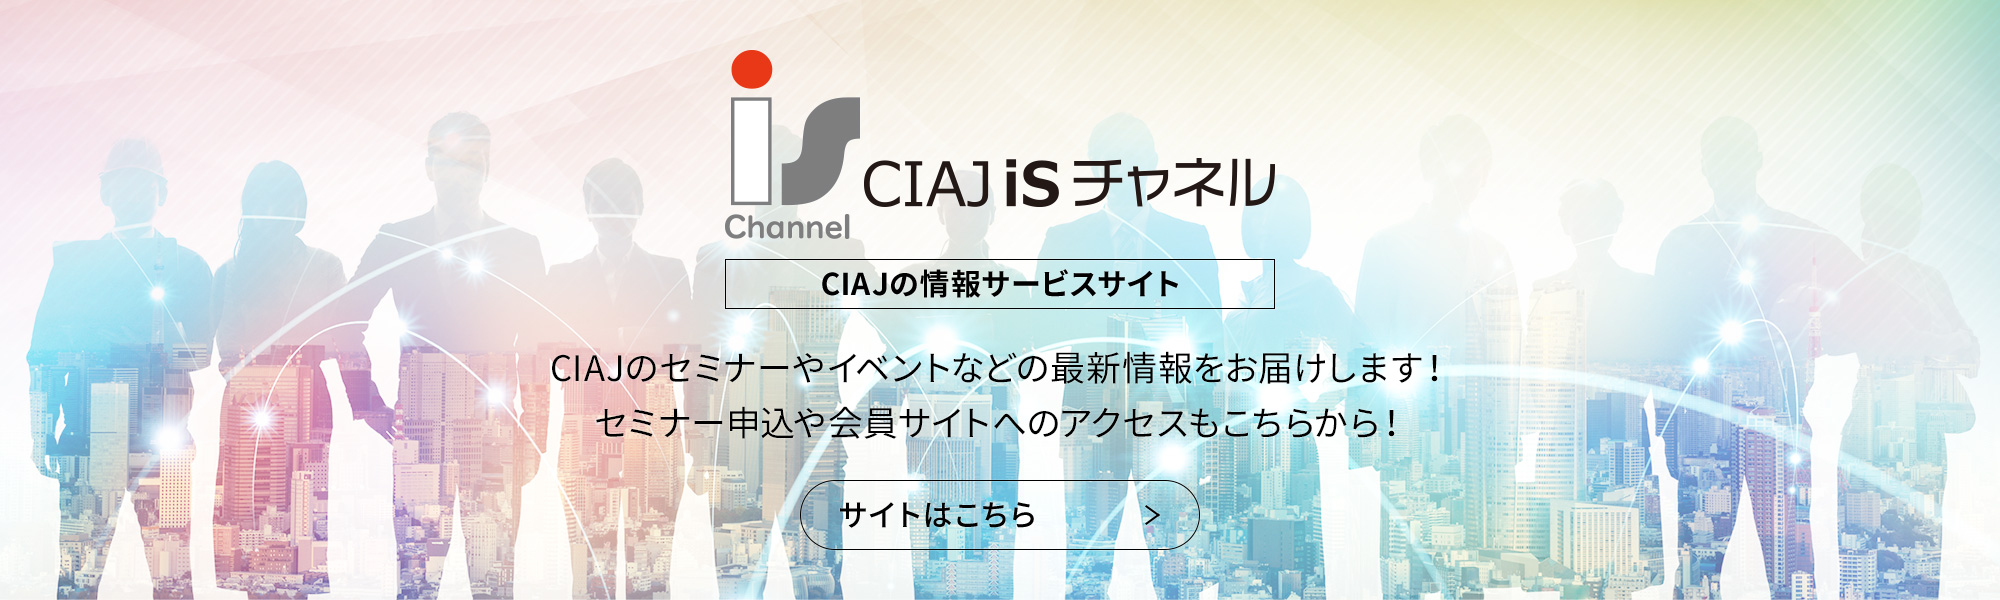 CIAJ iSチャネル